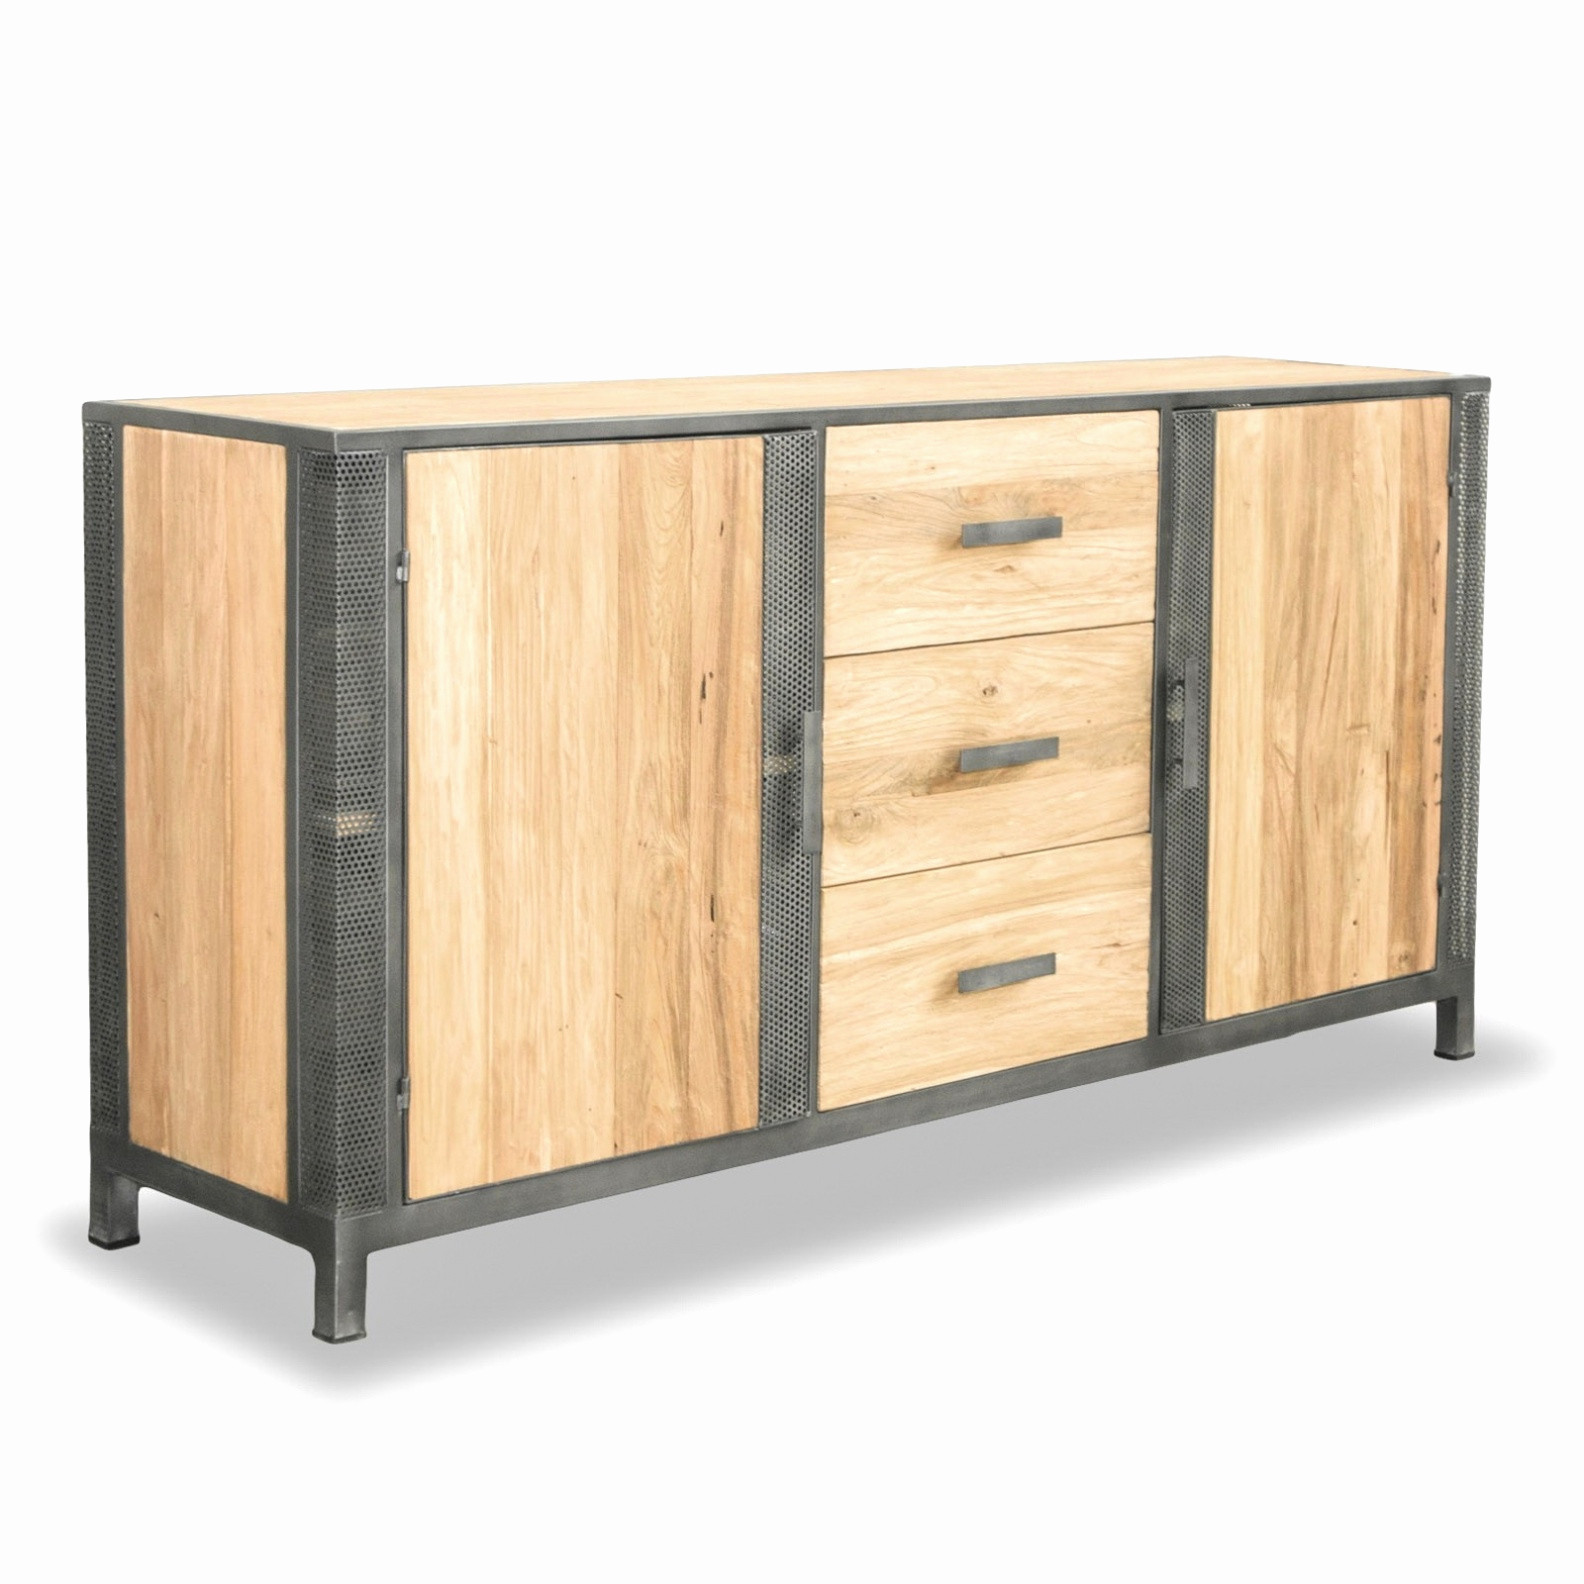 meuble bois et fer meuble en fer et bois luxe meuble fer frais cuisine blanche et bois of meuble bois et fer